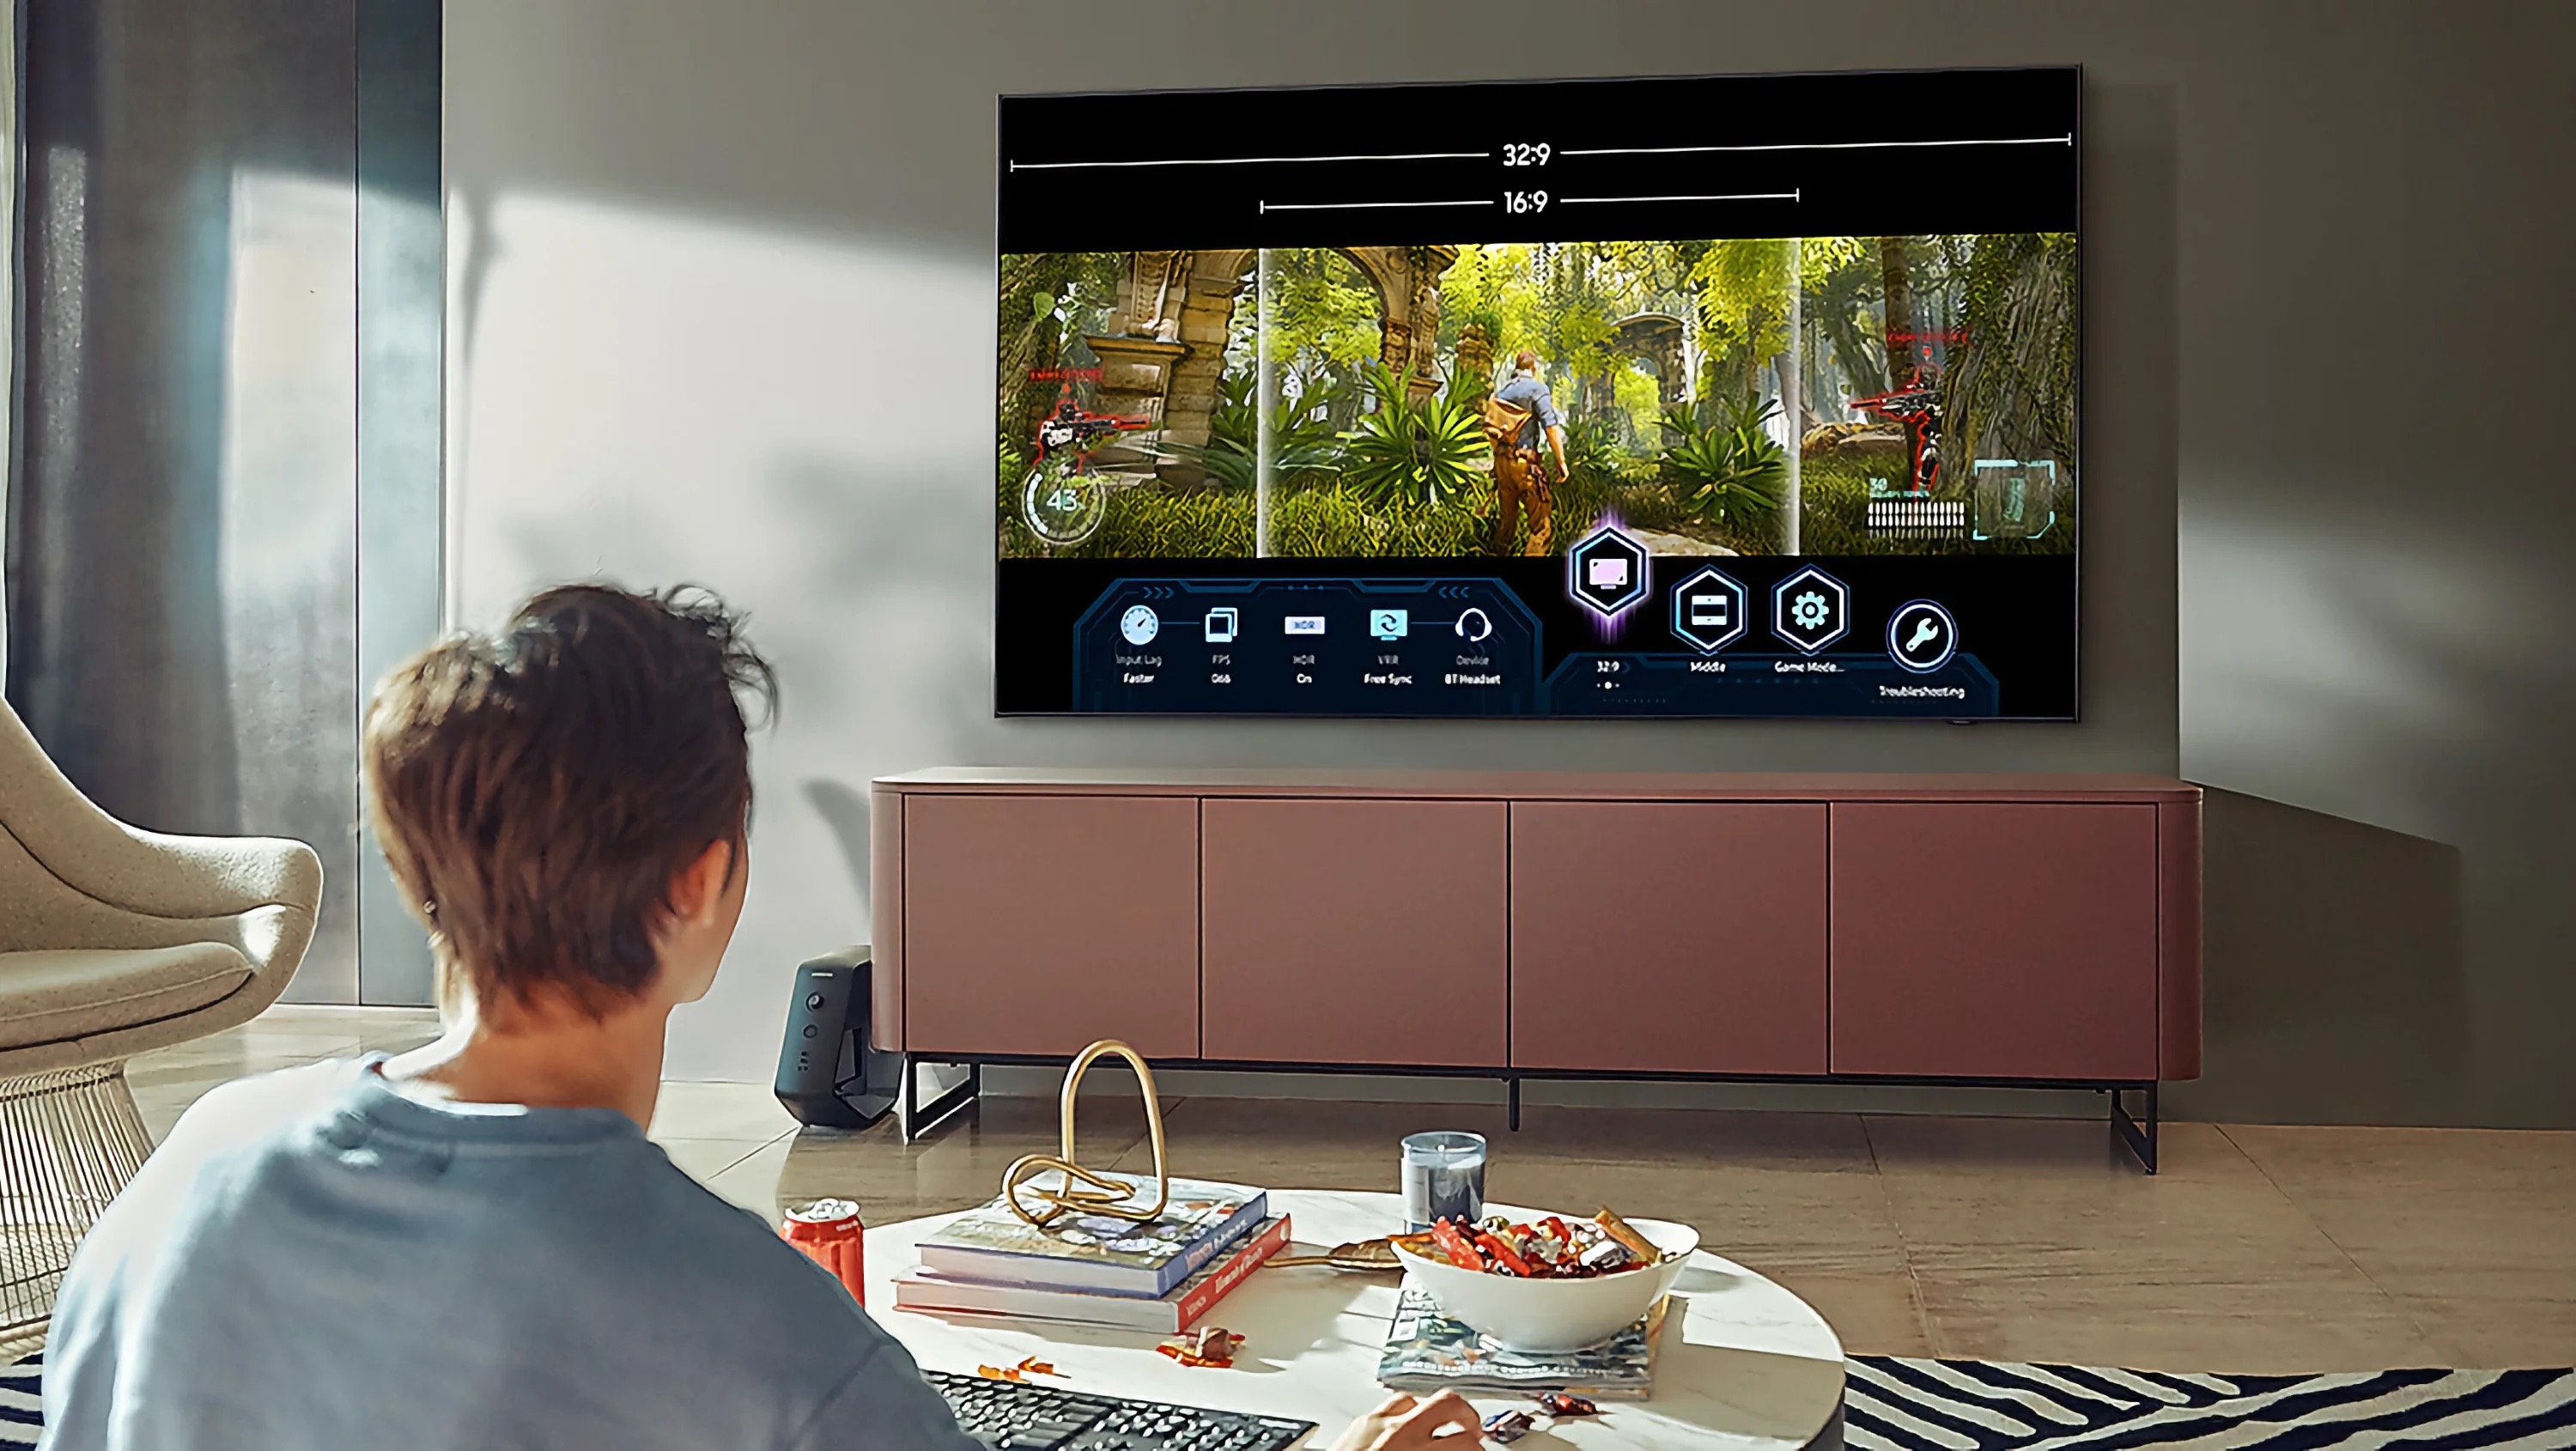 Los mejores dispositivos para convertir tu televisión en una smart TV -  Información